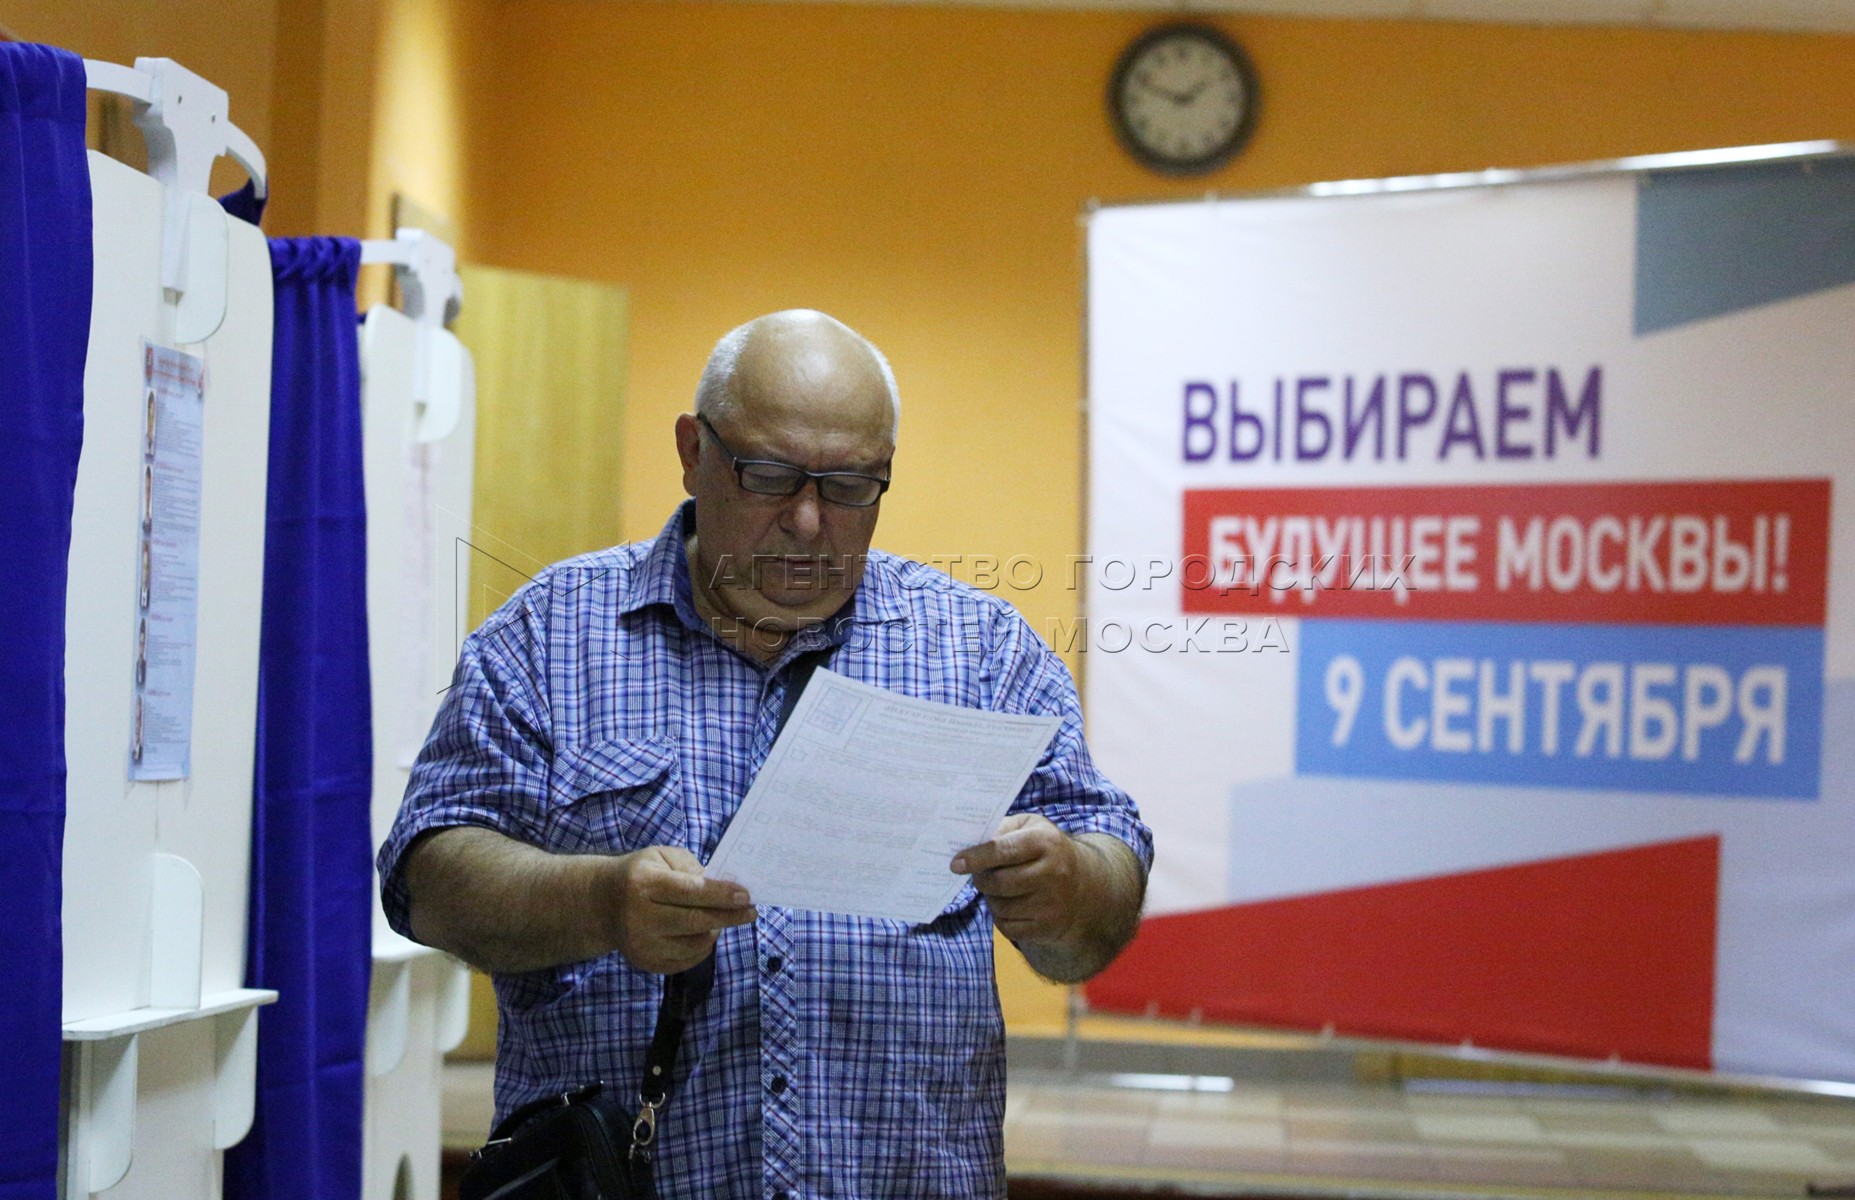 Явка на выборах мэра москвы. Явка на выборы мэра Москвы.